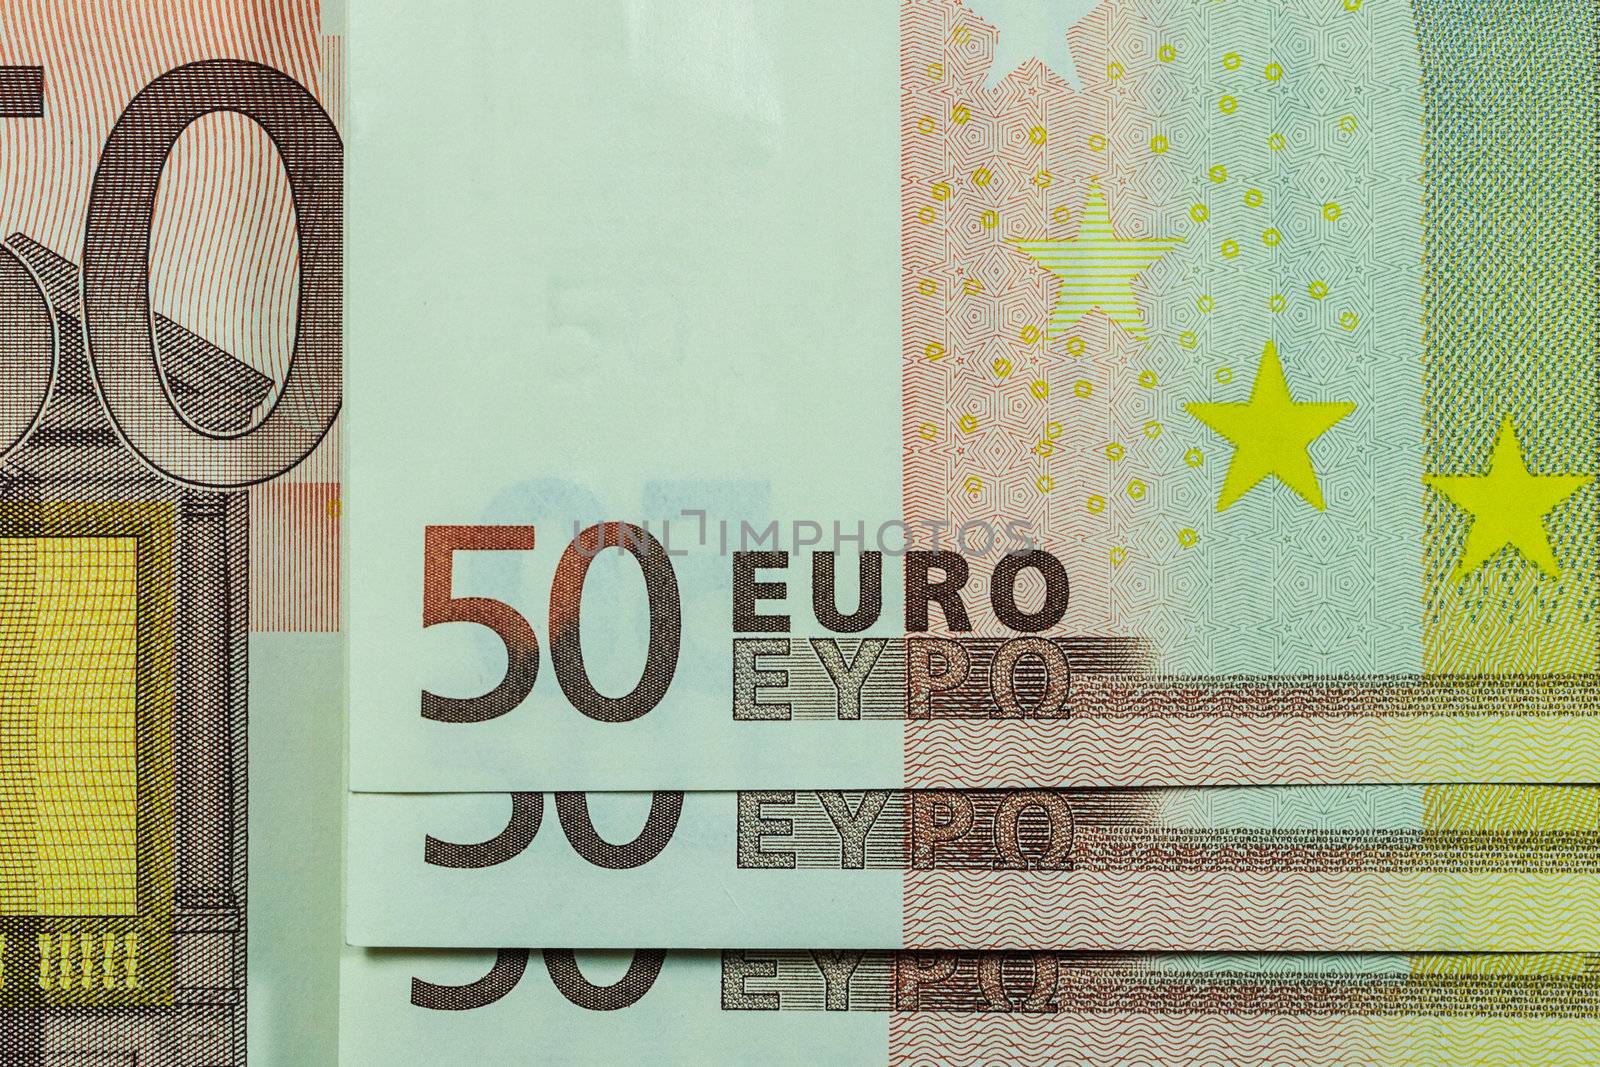 50 Euro Banknote, Macro lens Closeup, Horizontal Pattern by punpleng